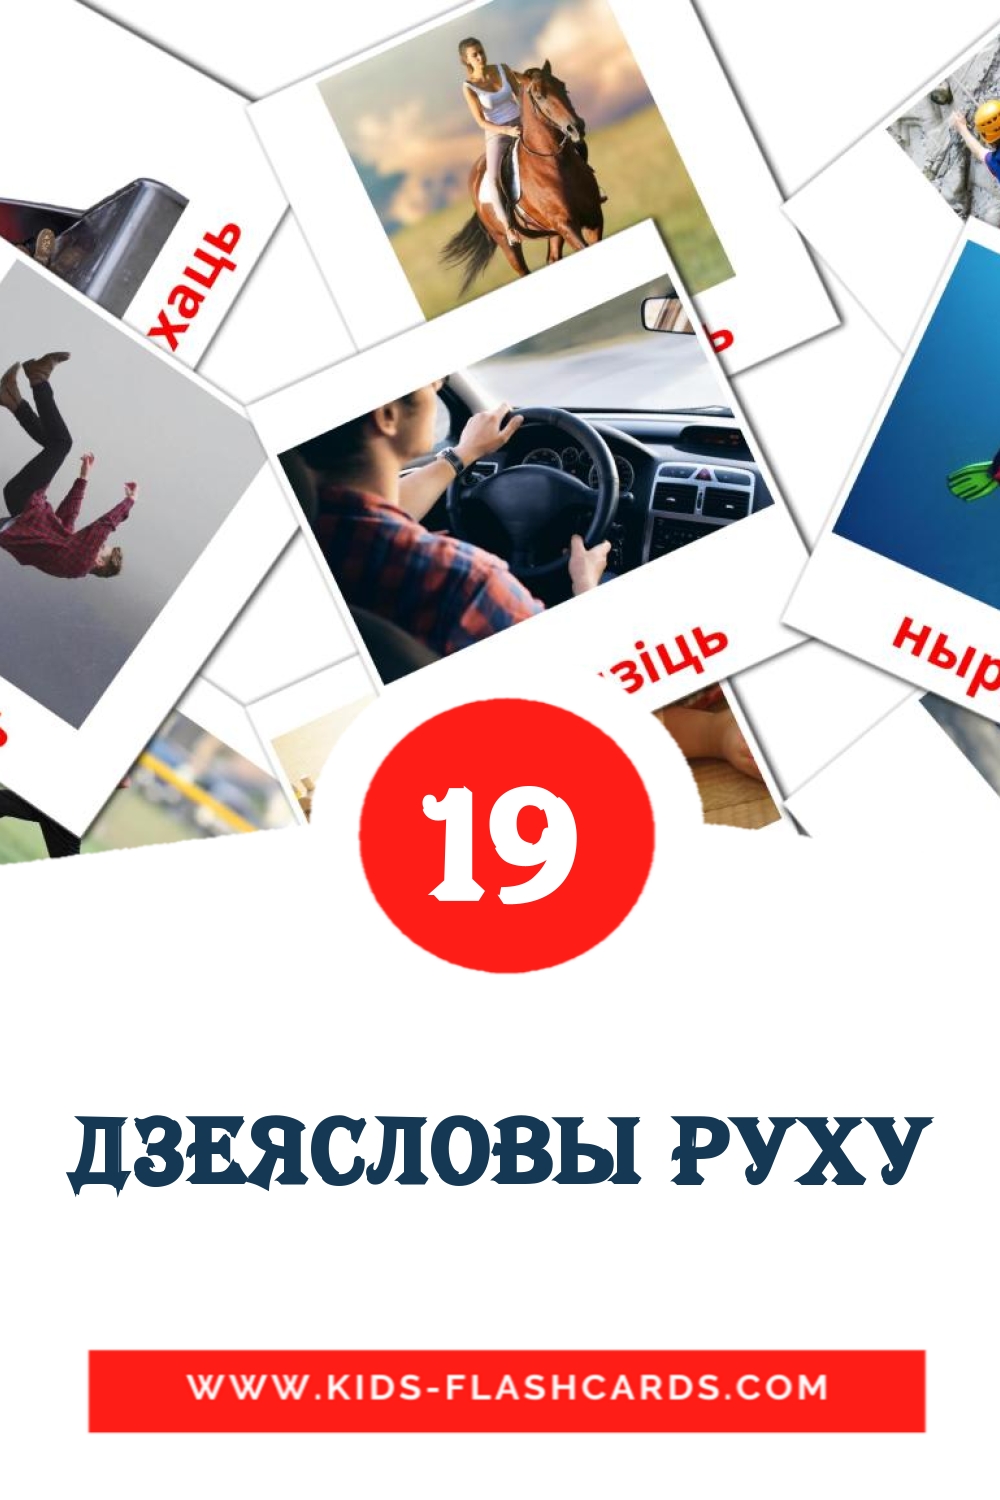 19 дзеясловы руху Bildkarten für den Kindergarten auf Weißrussisch